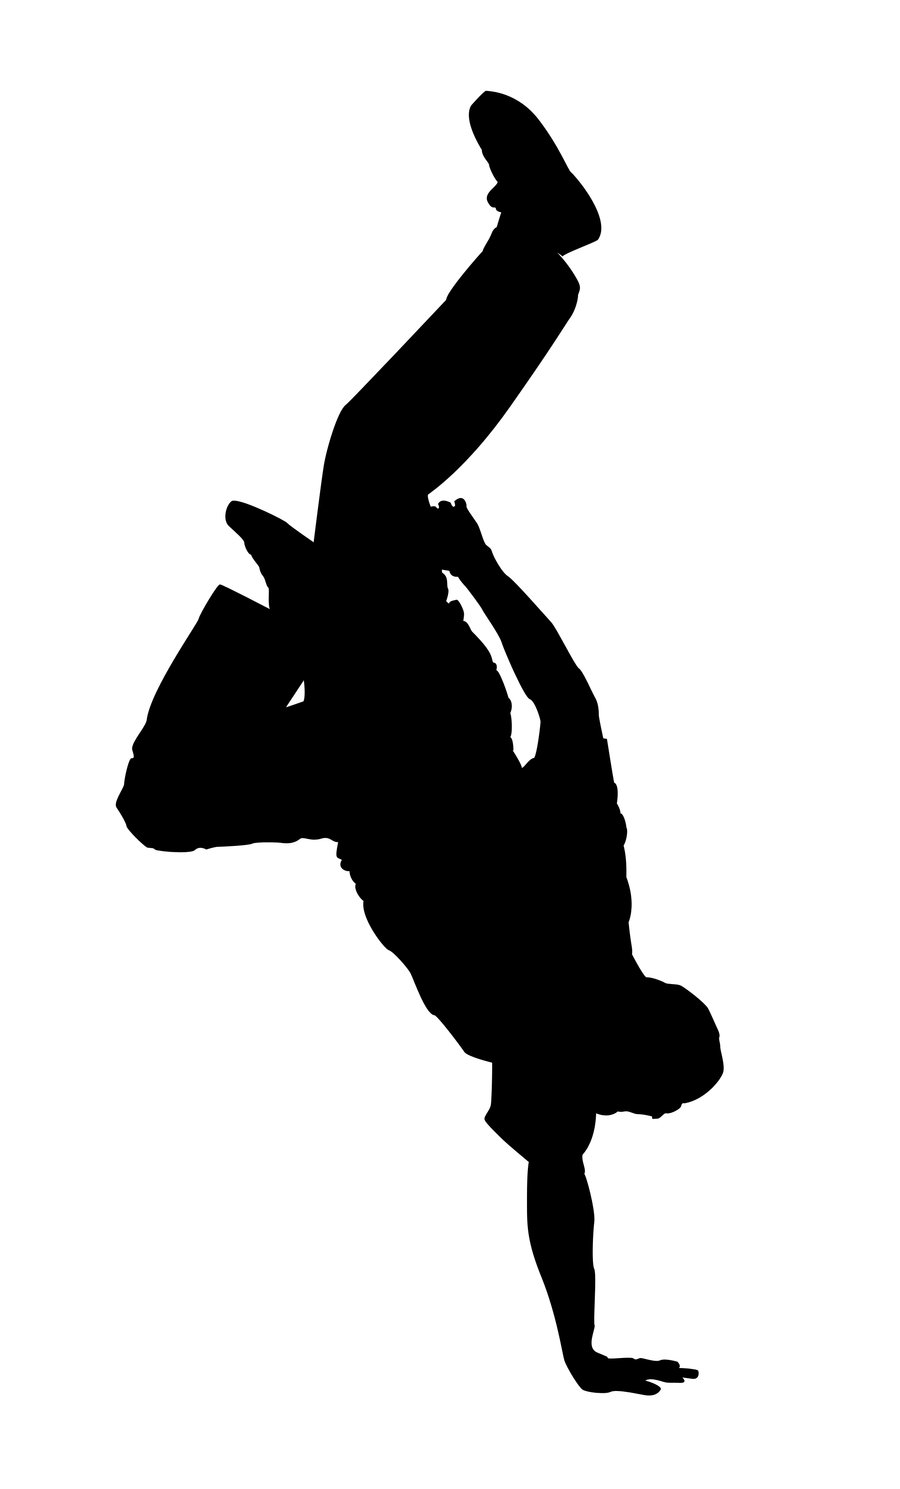 Break Dancer Silhouette 1 by kkplum on deviantART